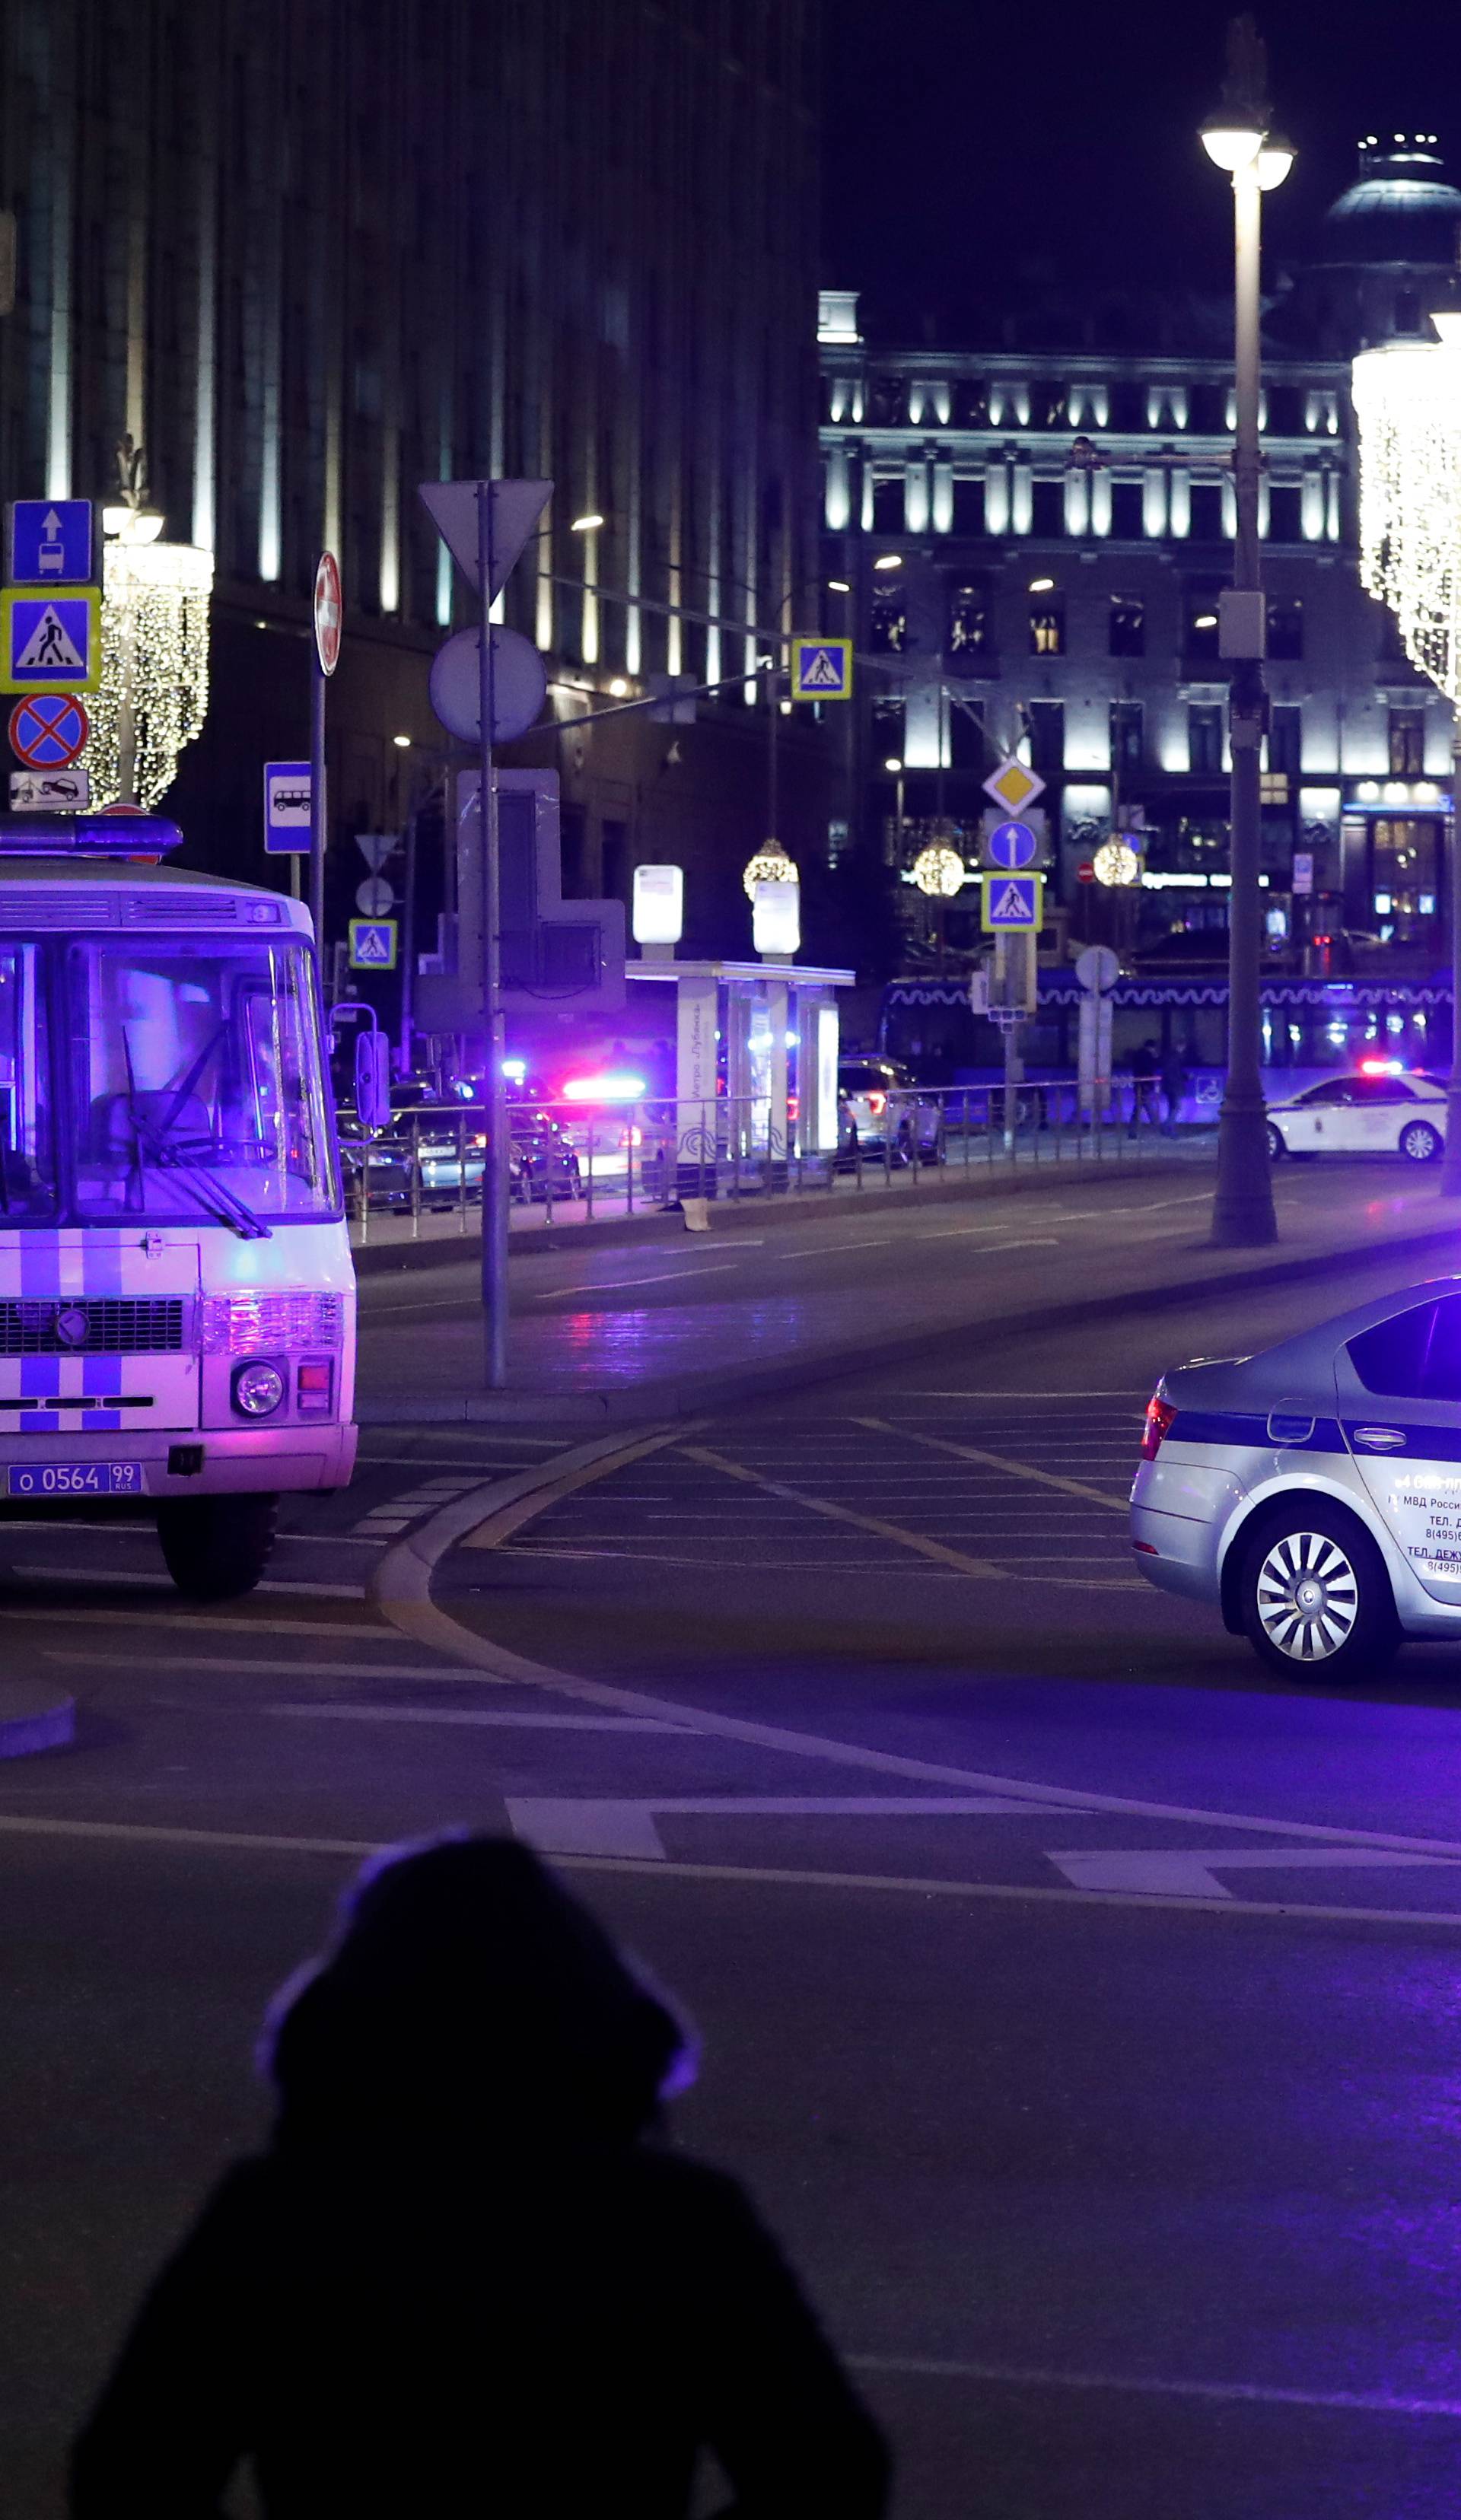 Teroristički napad u Moskvi jučer je izveo Rus 'usamljenik'